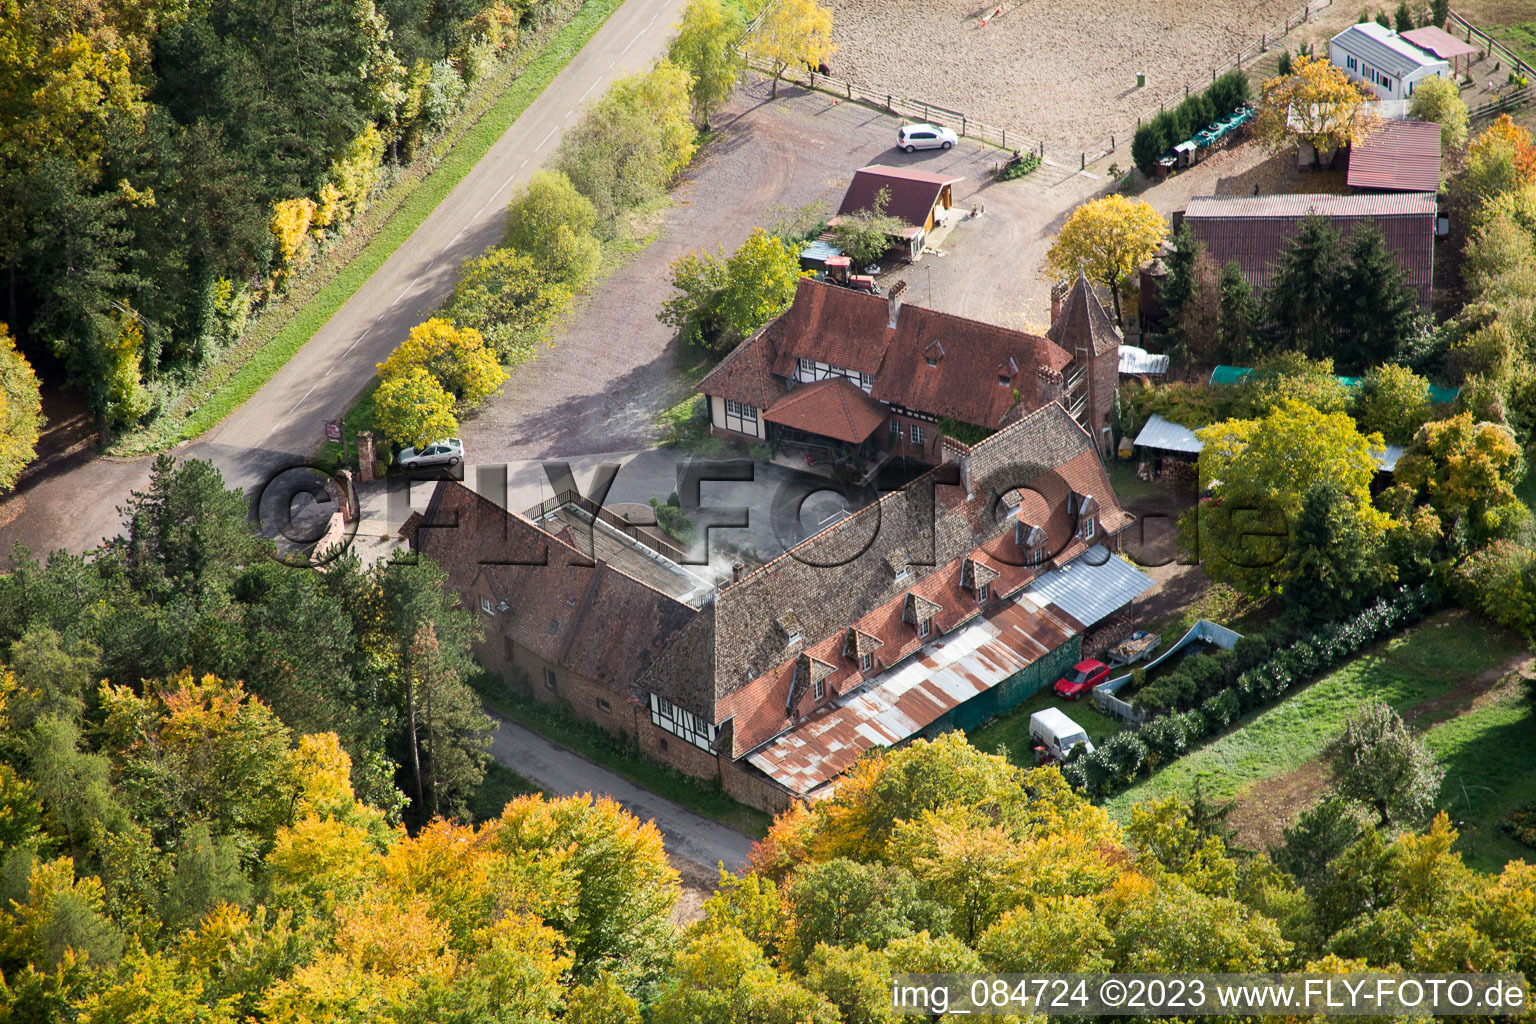 Niederbronn-les-Bains, Villa le Riessack im Bundesland Bas-Rhin, Frankreich von oben gesehen